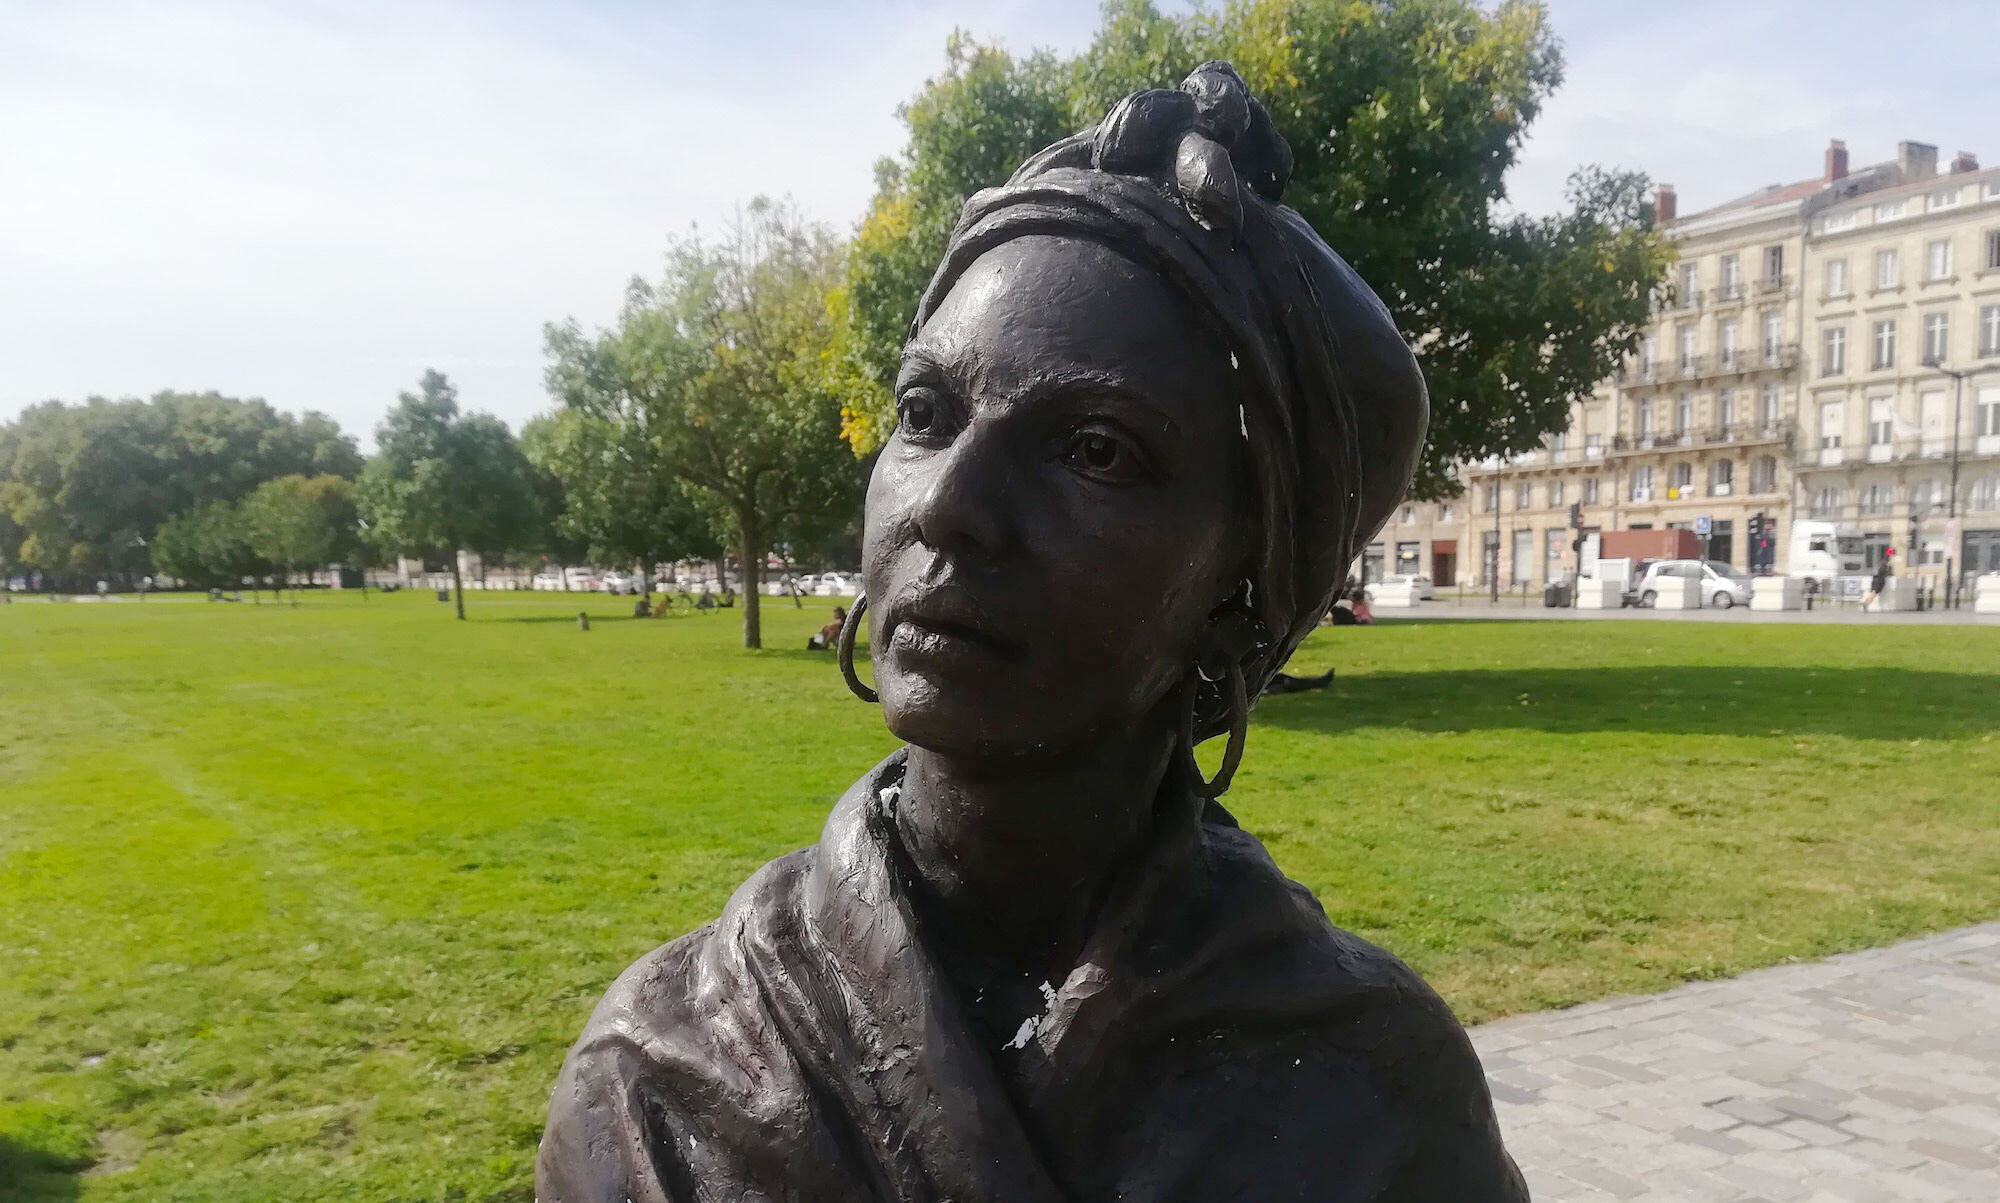 La statue de l’esclave Modeste Testas ciblée par un acte de vandalisme raciste ?